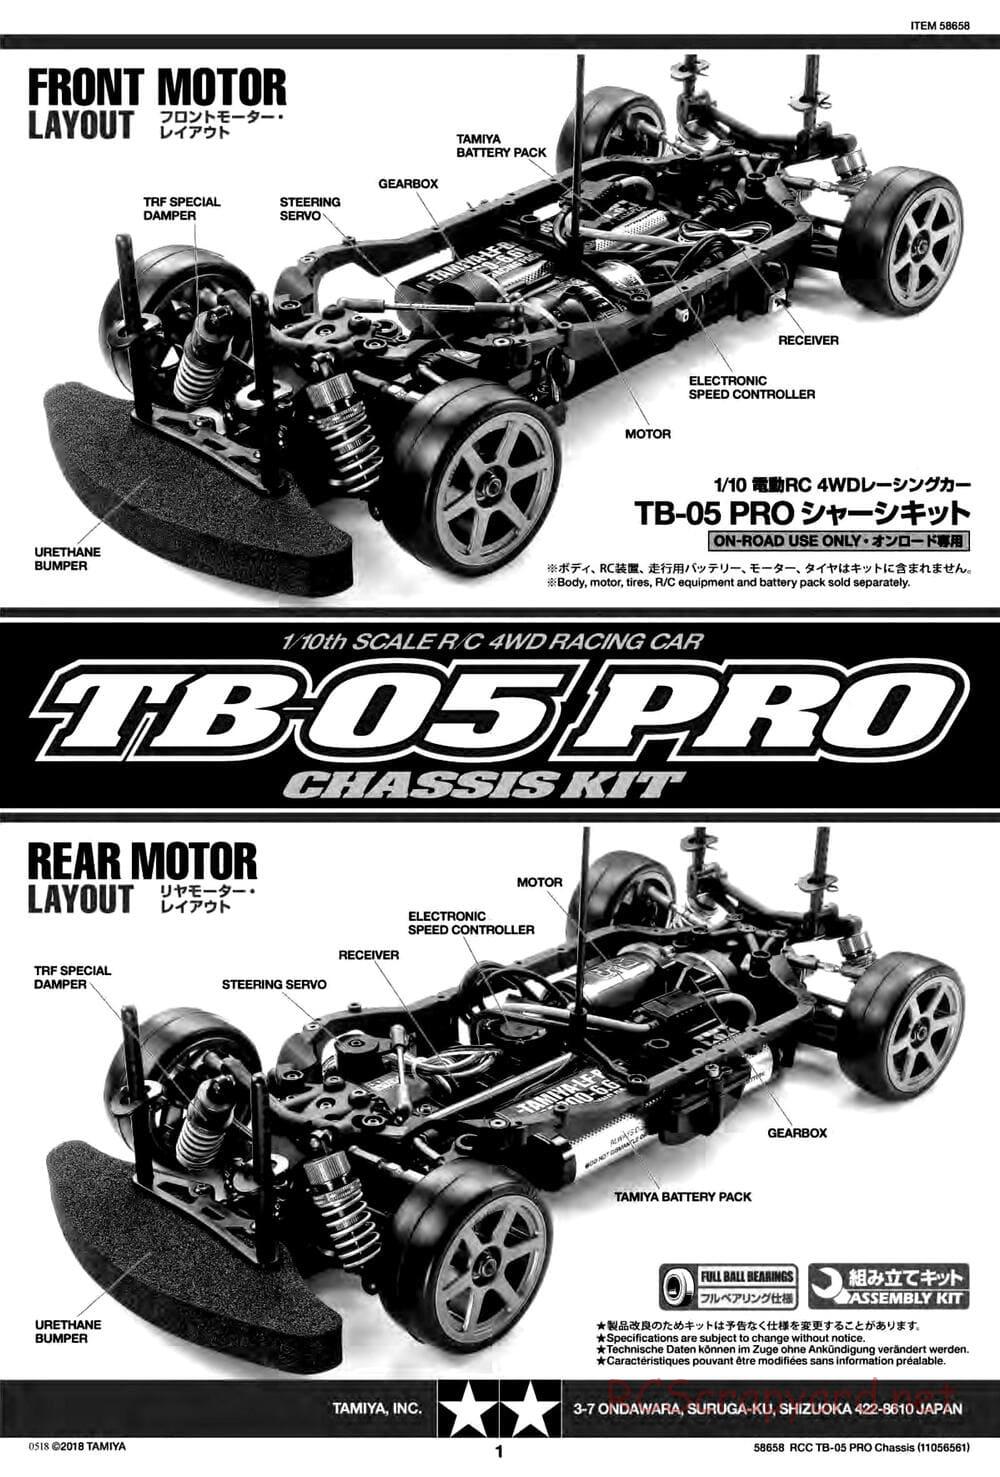 Tamiya - TB-05 Pro Chassis - Manual - Page 1